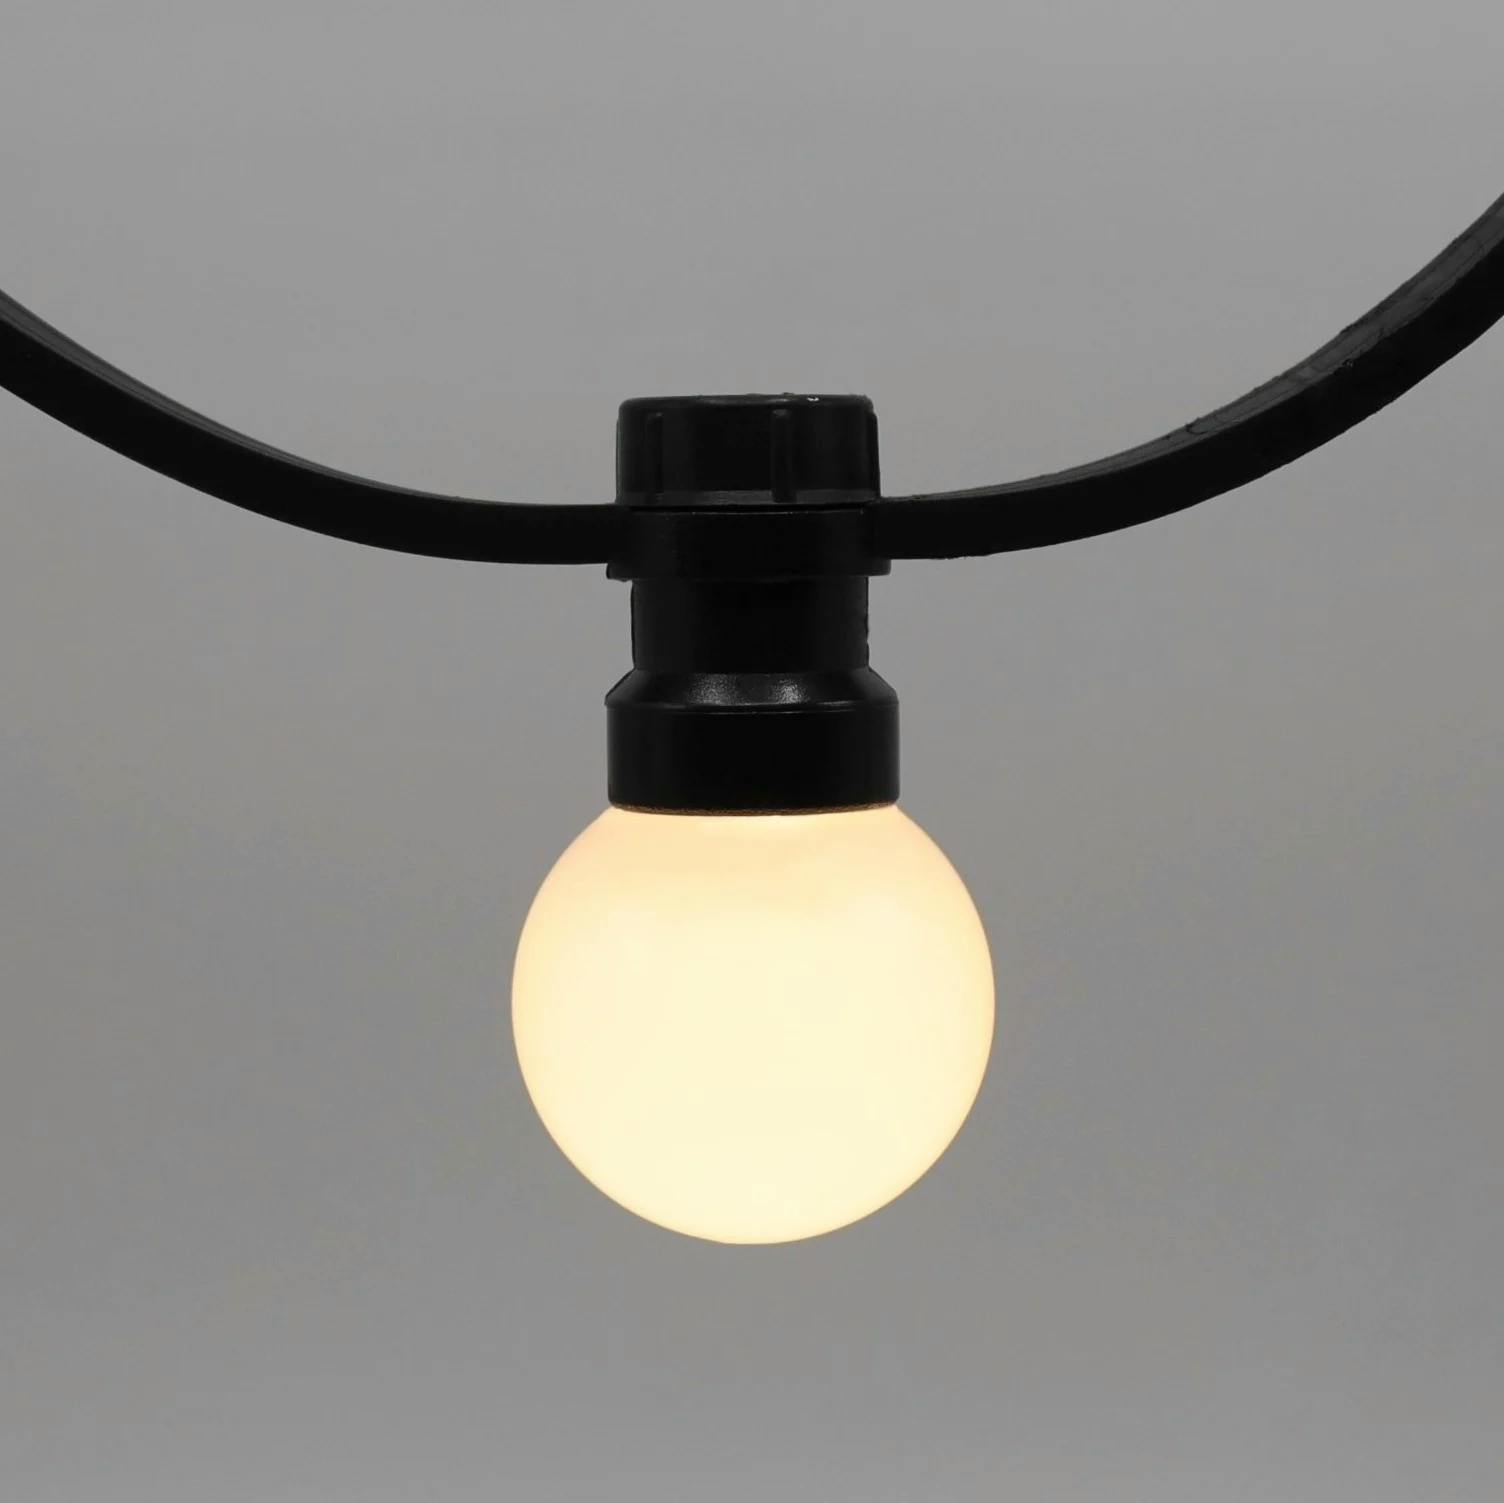 Guirlande lumineuse extérieure avec lumières fixes - Blanc laiteux - 10m ou 25m - extensibles